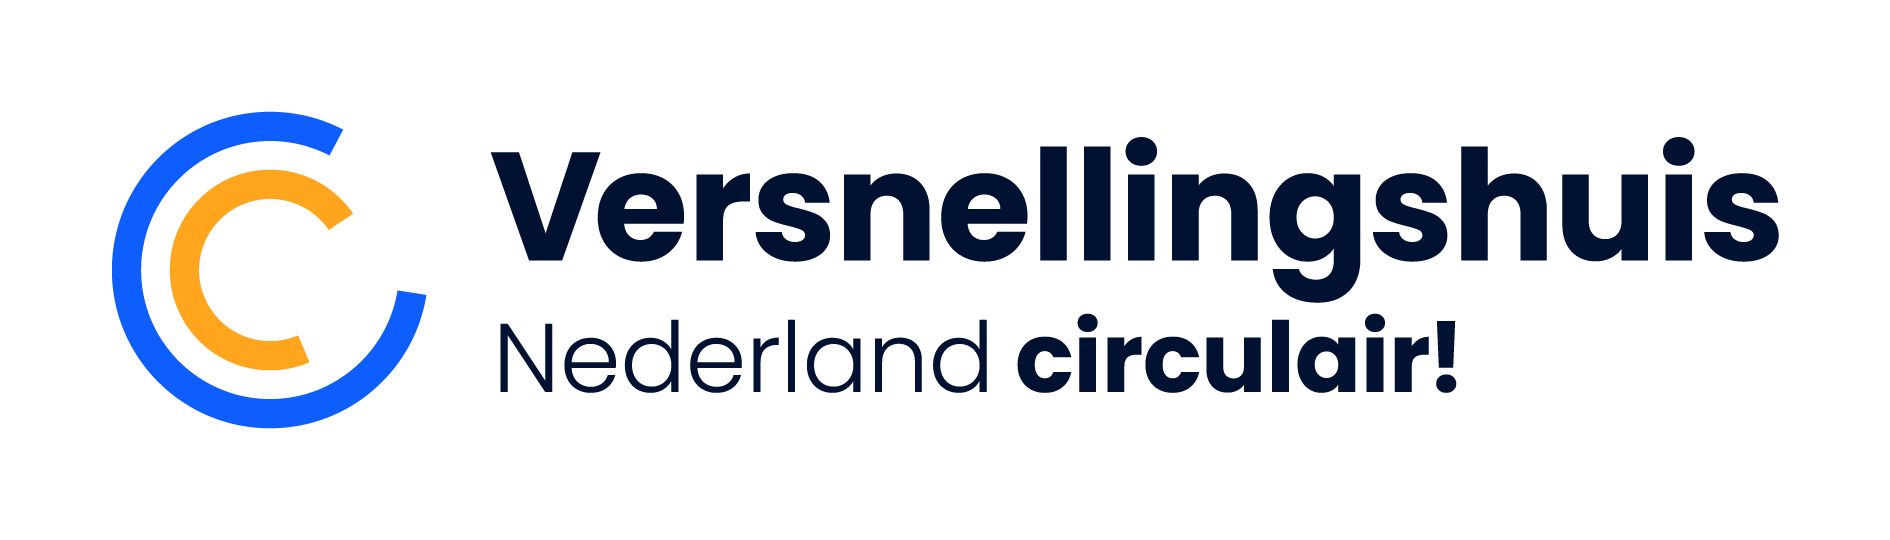 VersnellingshuisCE_1_Logo